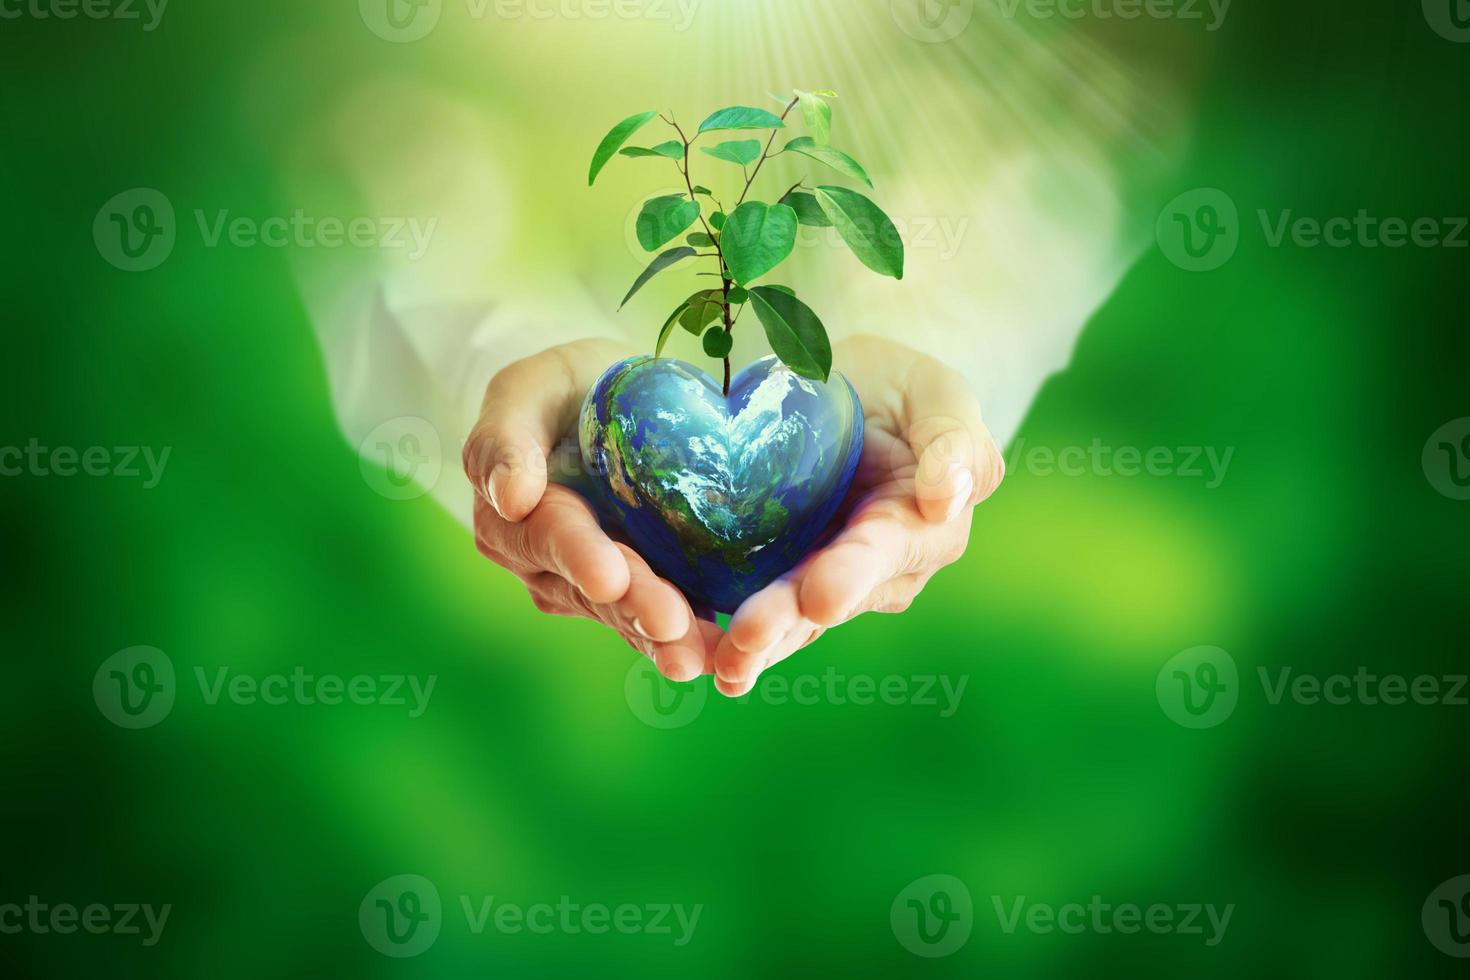 mänskliga händer som håller klotbollen och trädet på suddig grön bokeh-bakgrund och kort för World Earth Day, räddar miljön, skyddar den rena planeten och säker ekologi foto